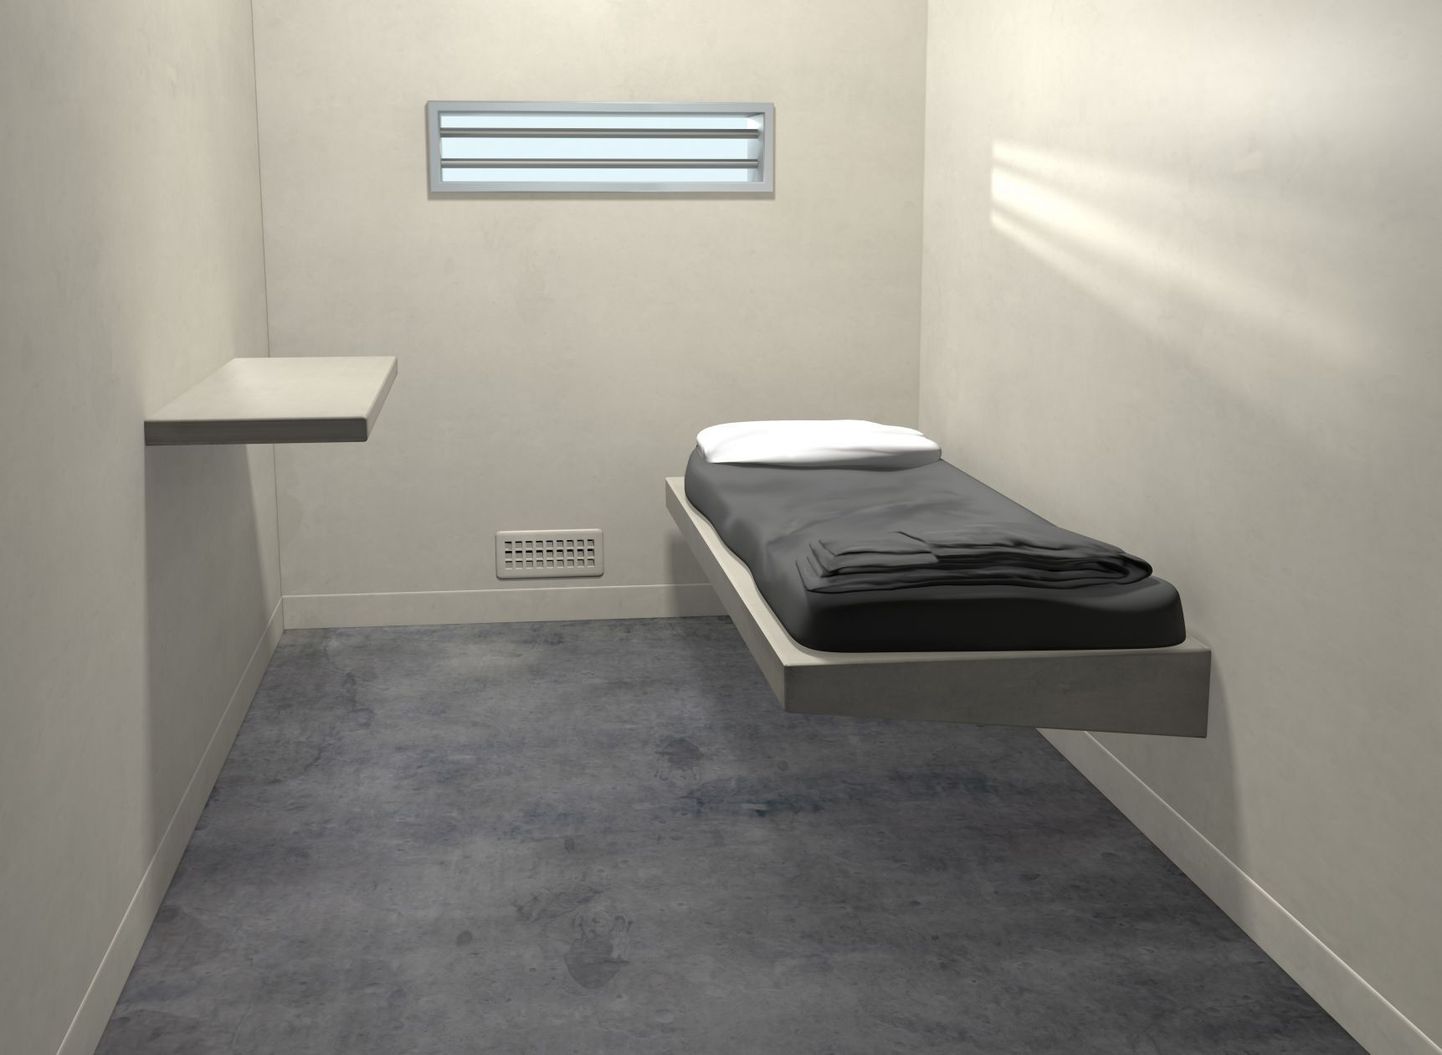 Hollandi üks kurikuulsamaid vanglaid muudeti luksushotelliks